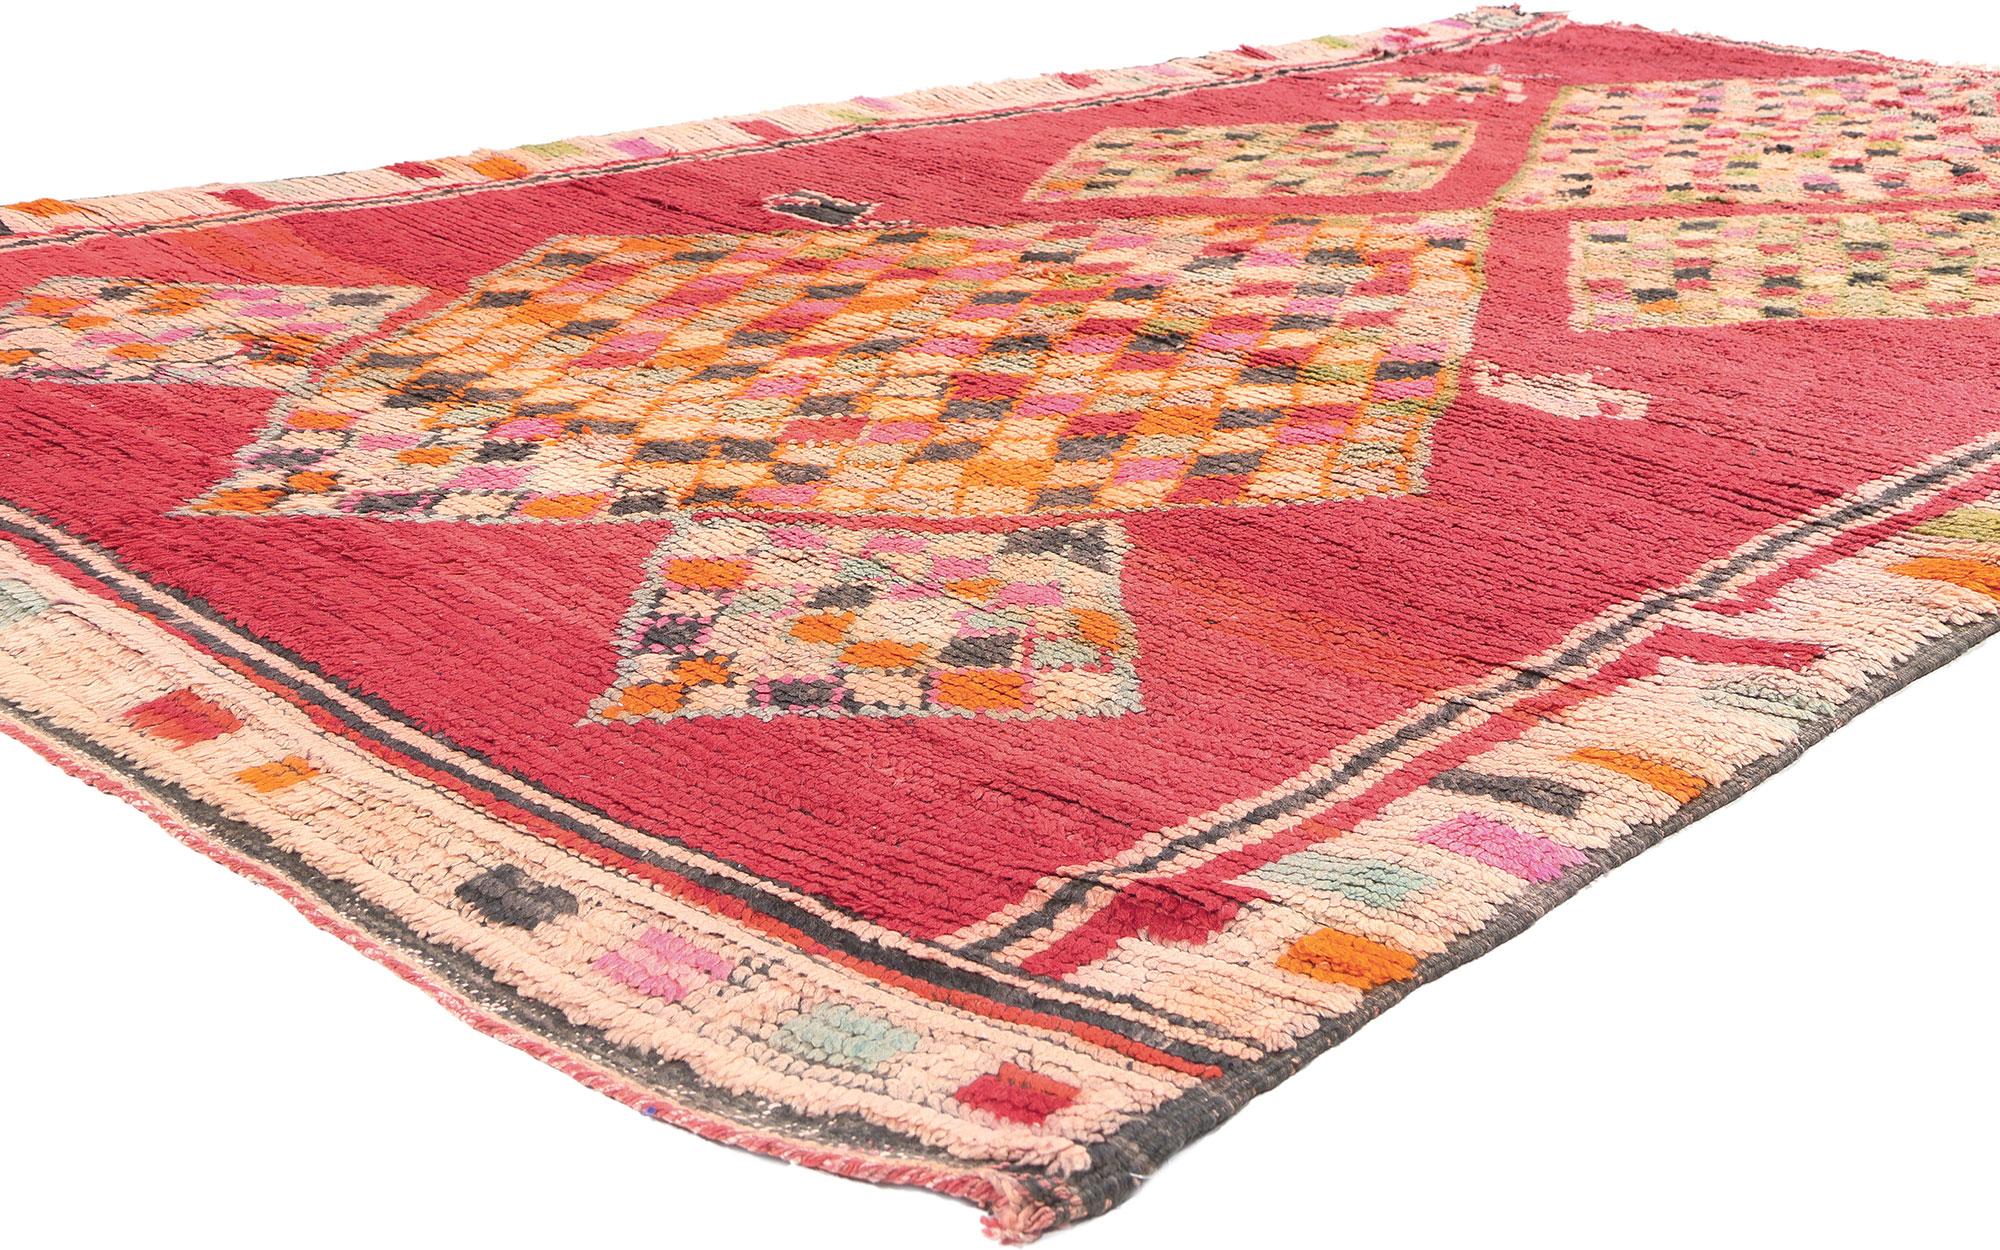 20898 Vintage Rot Boujad Marokkanischer Teppich, 06'02 x 10'03.

Der Boujad-Teppich ist ein handgewebter Blickfang, der direkt von den Laufstegen von Boujad in der Khouribga-Region in Marokko stammt. Dieser für seine Exzentrik und sein